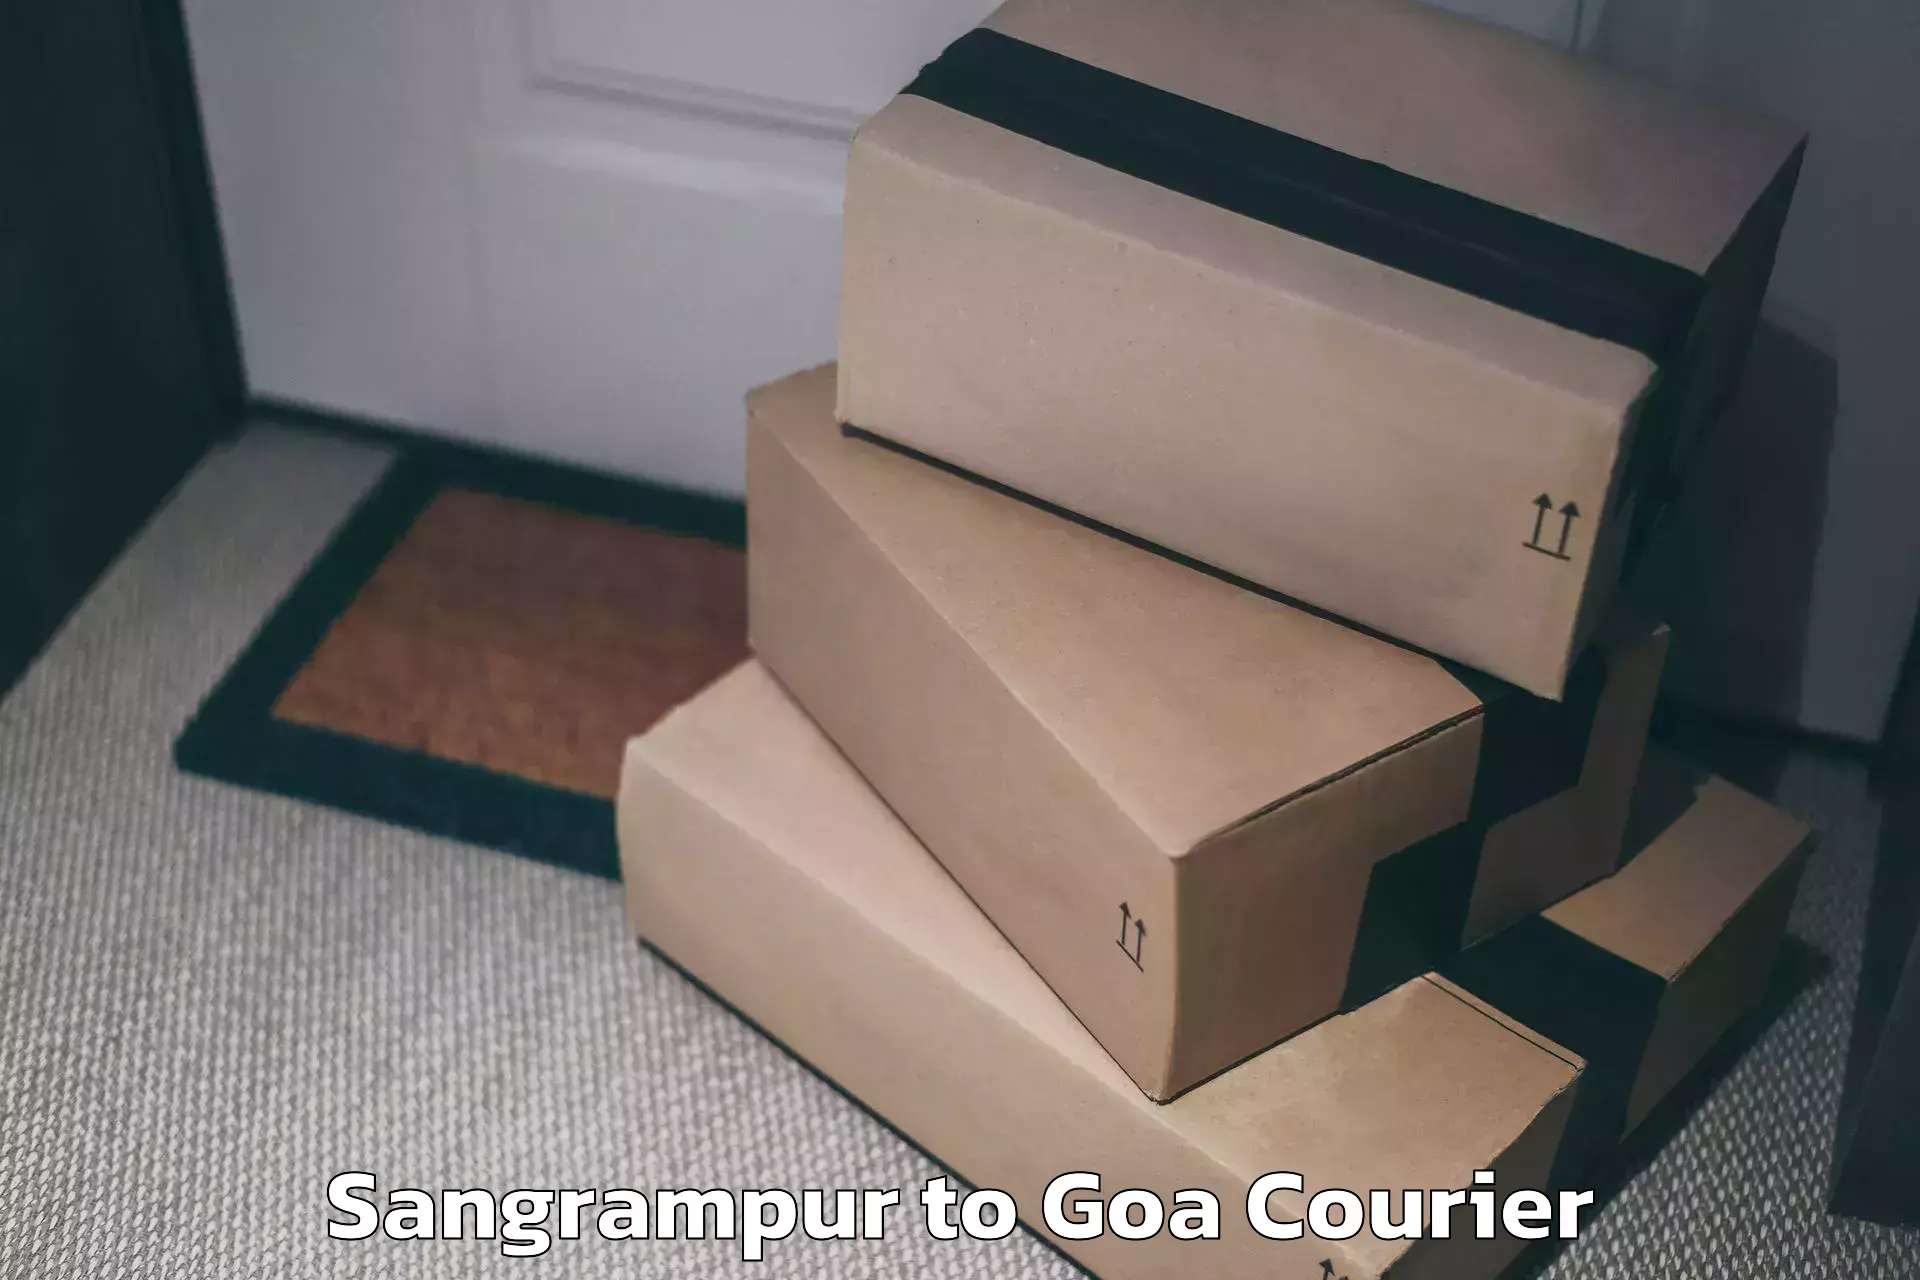 Luggage forwarding service Sangrampur to NIT Goa